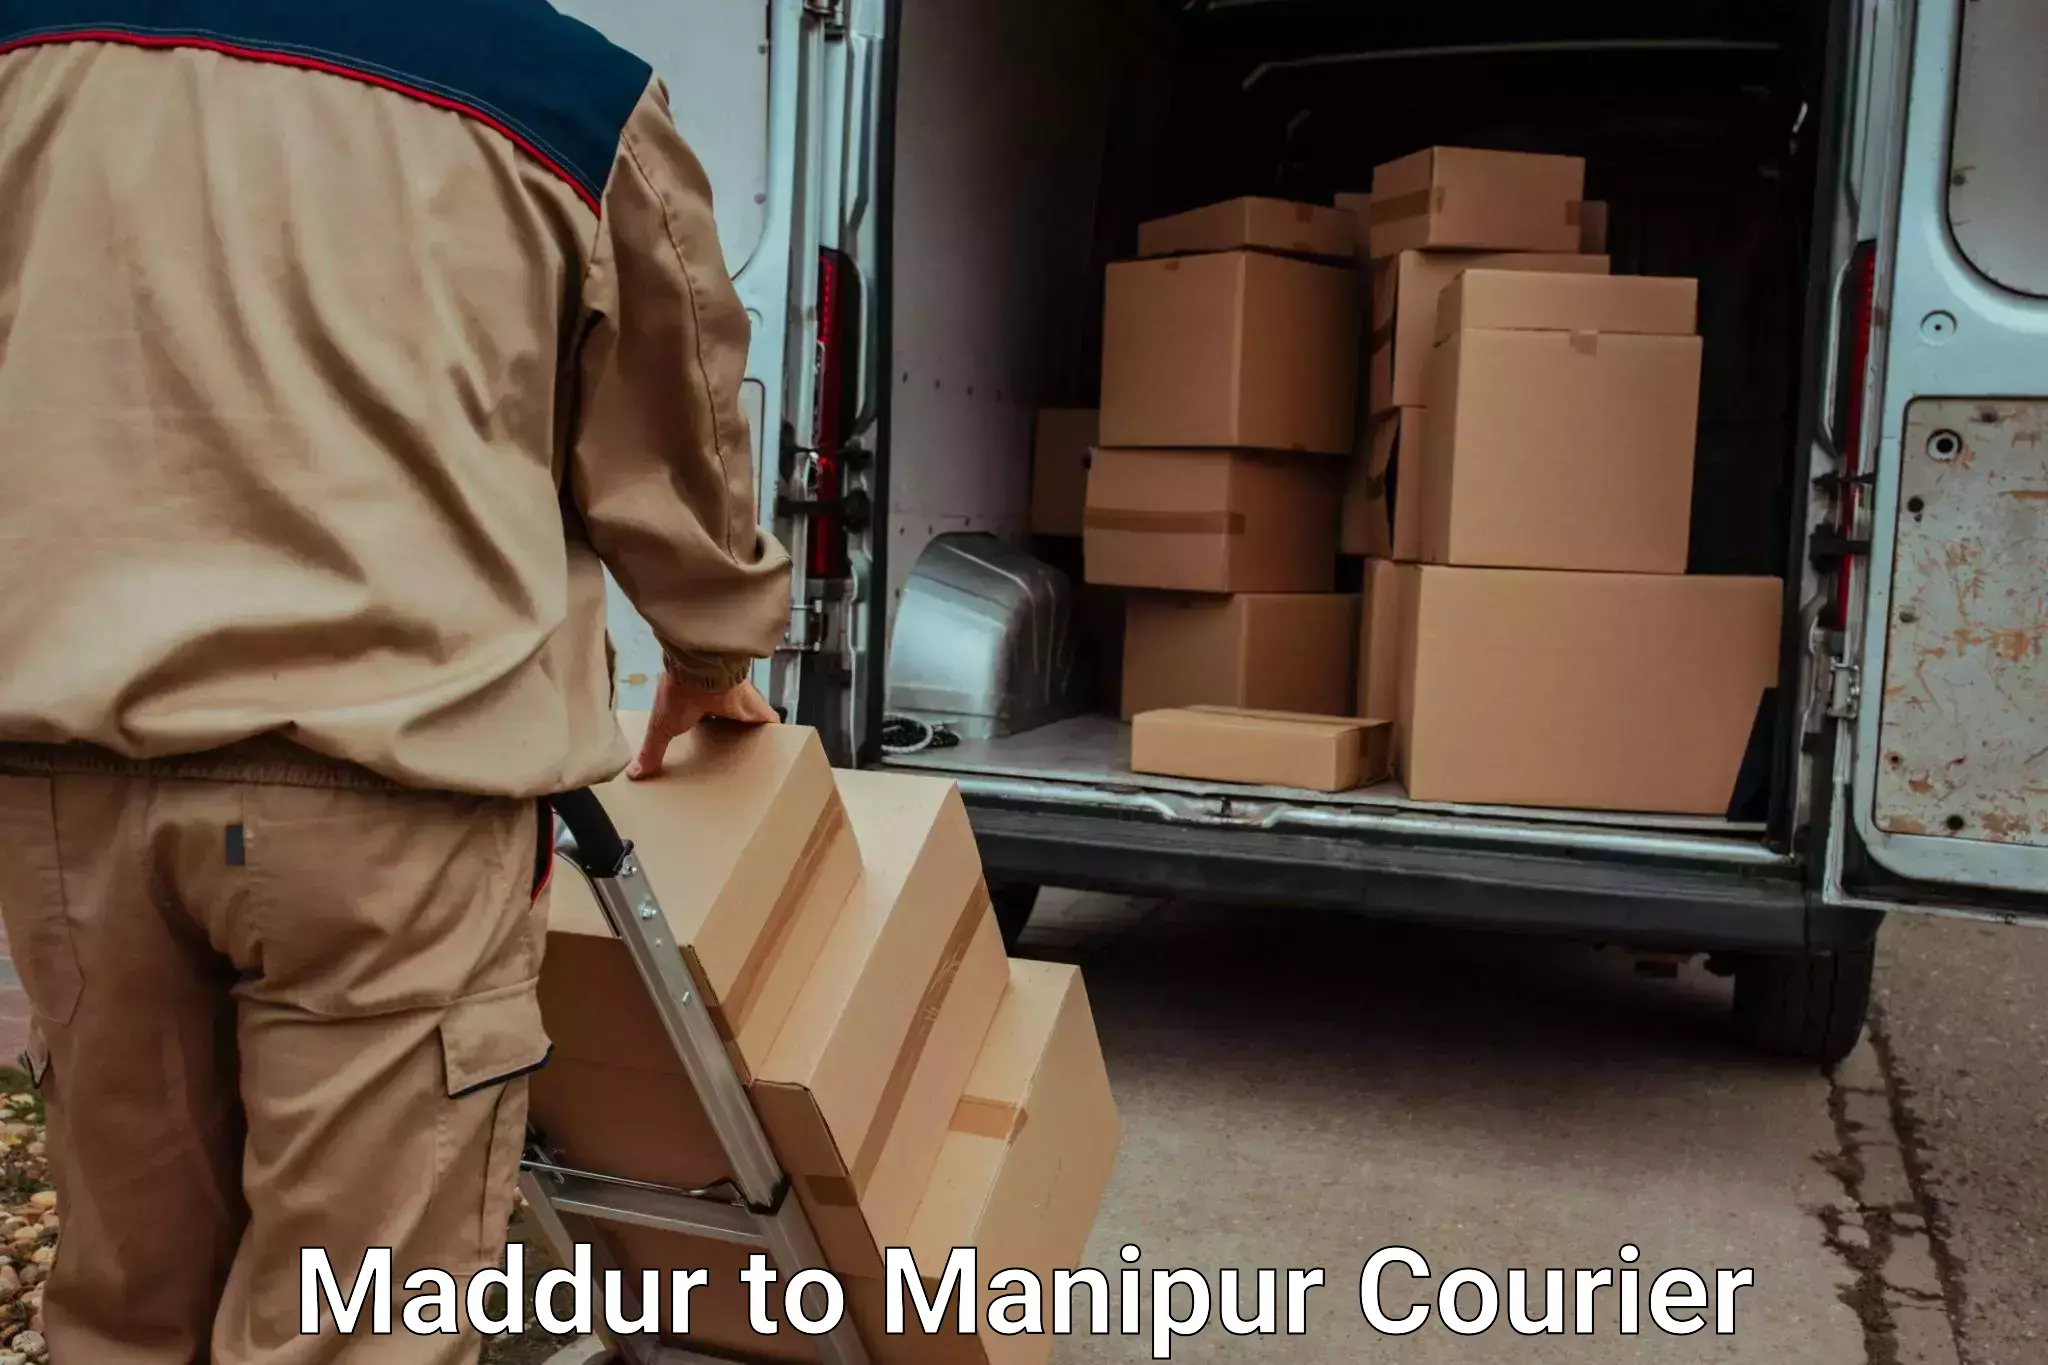 Furniture transport service Maddur to Ukhrul